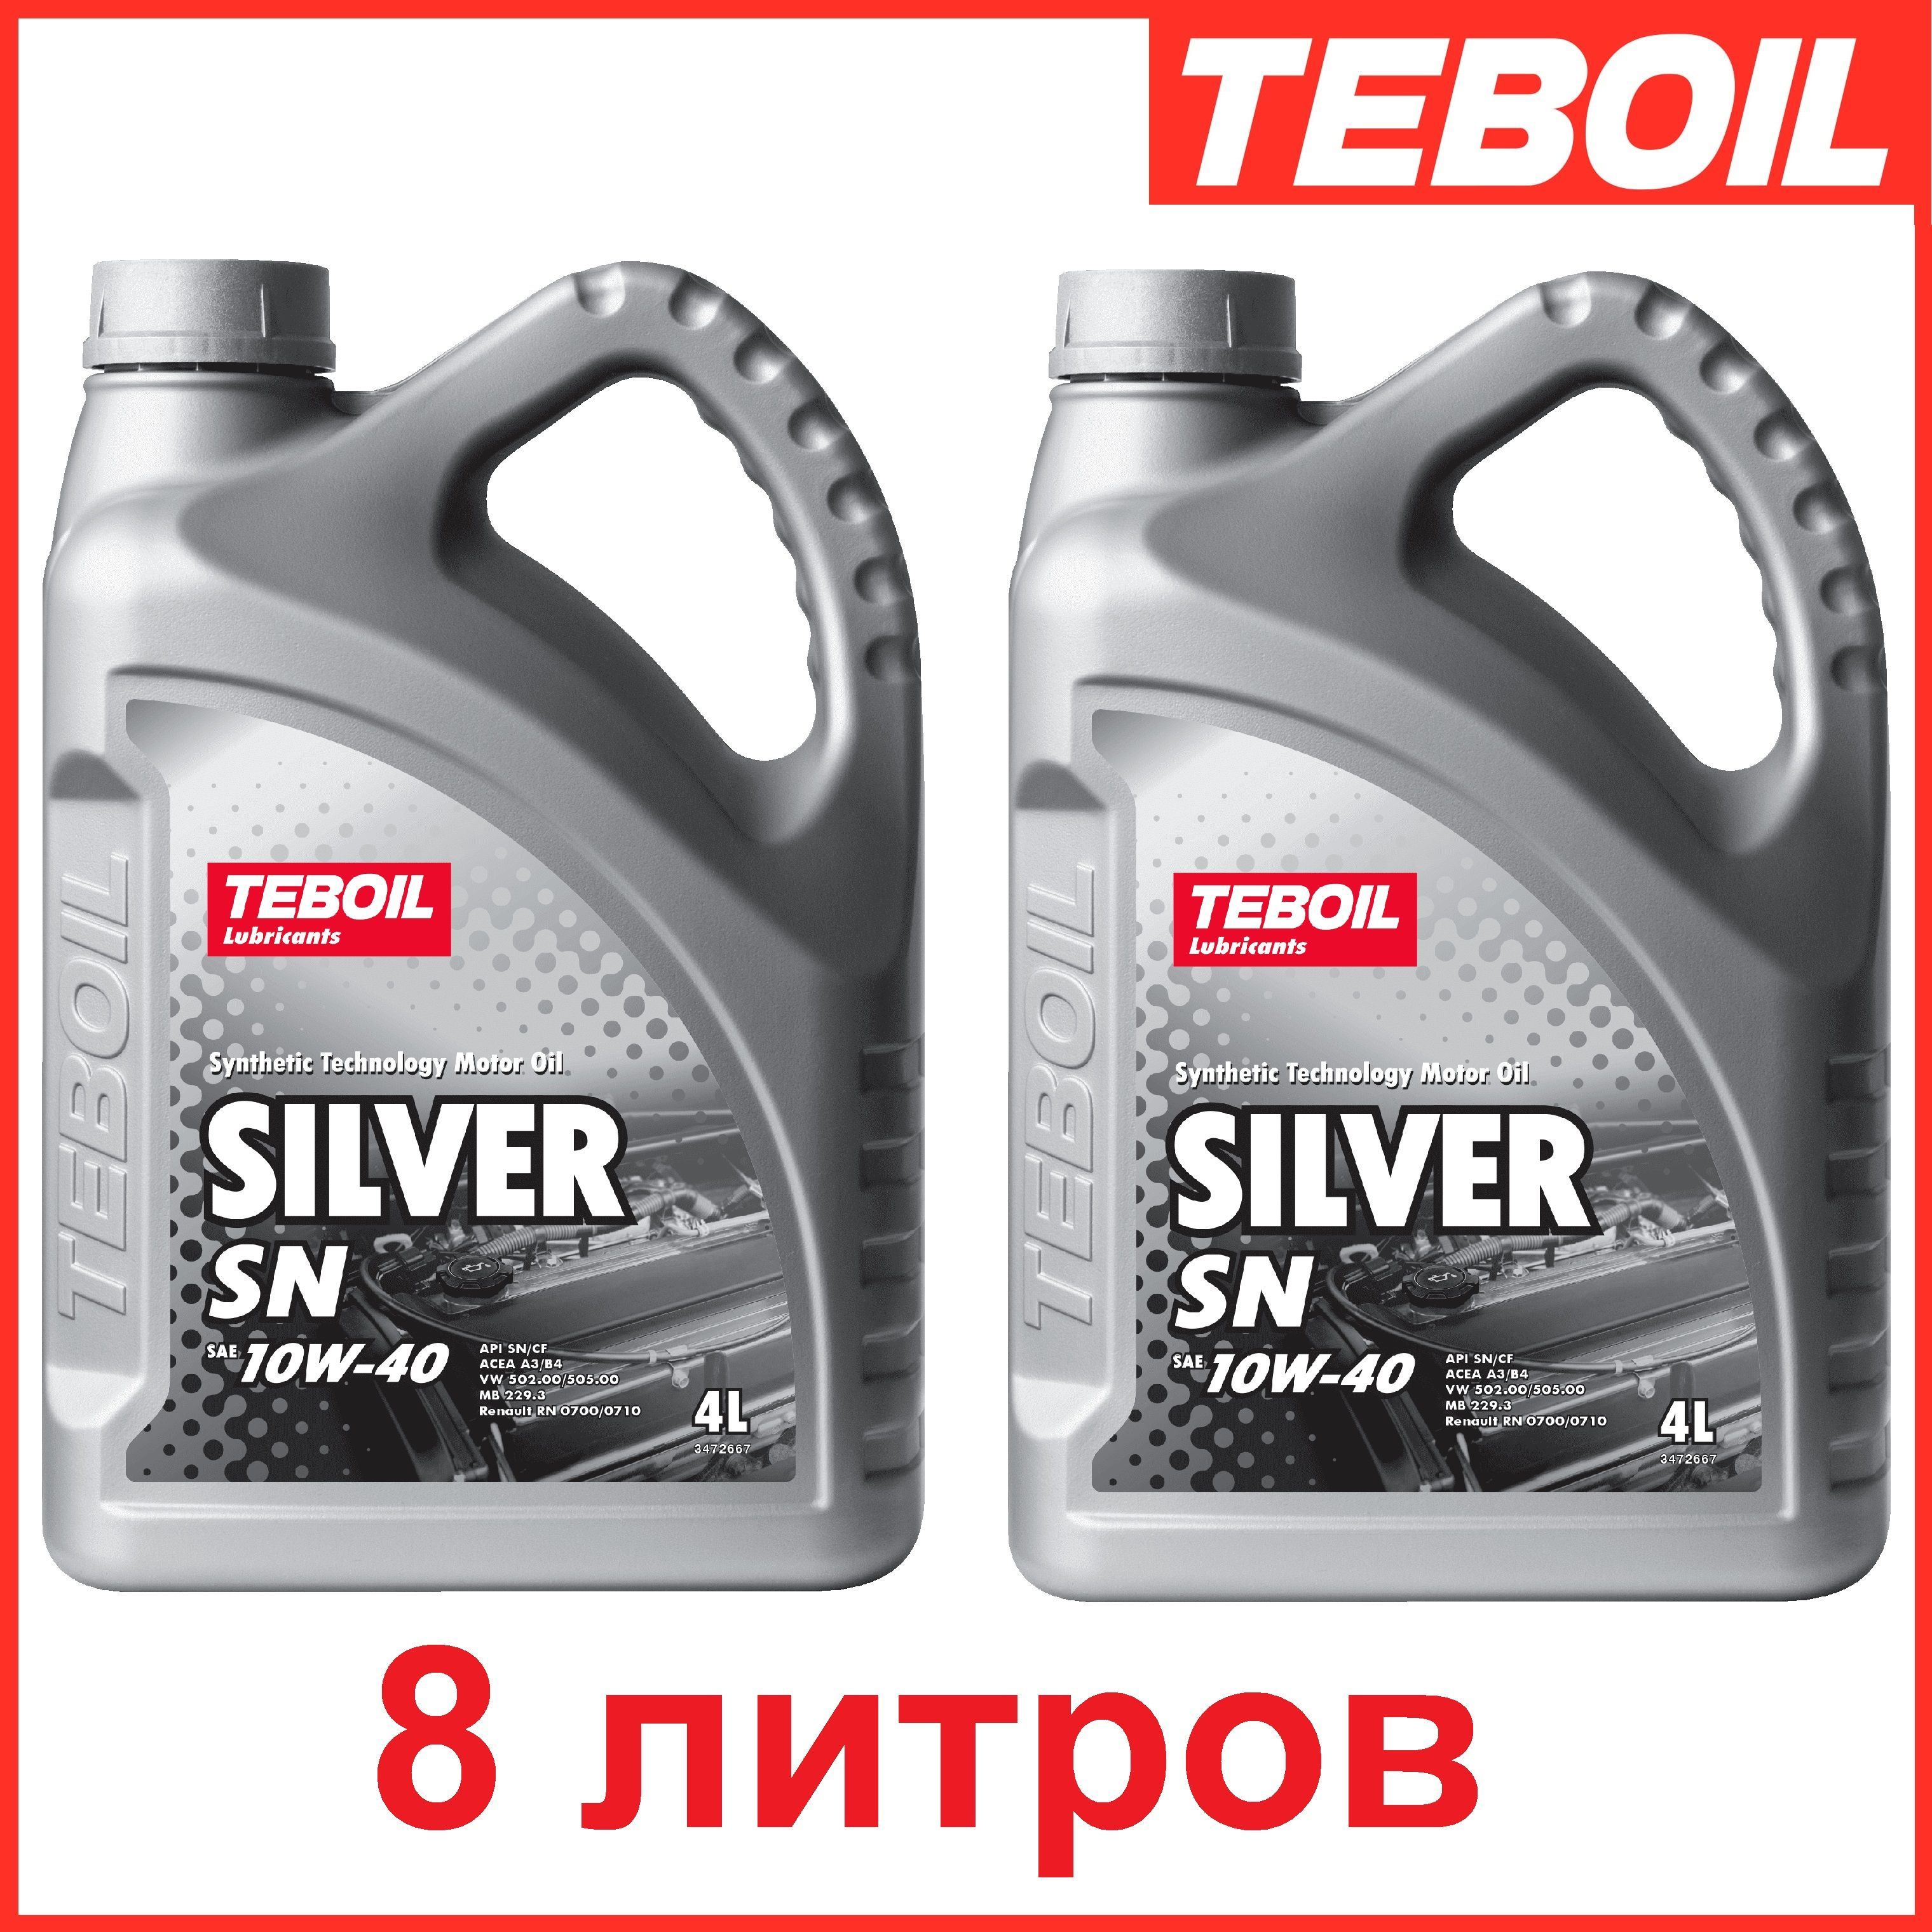 Teboil 10w 40. Teboil Silver 10w-40. Teboil Silver SN 10w-40. Teboil Silver SN 10w 40 4 л. Teboil Silver SN 10w-40 артикул.